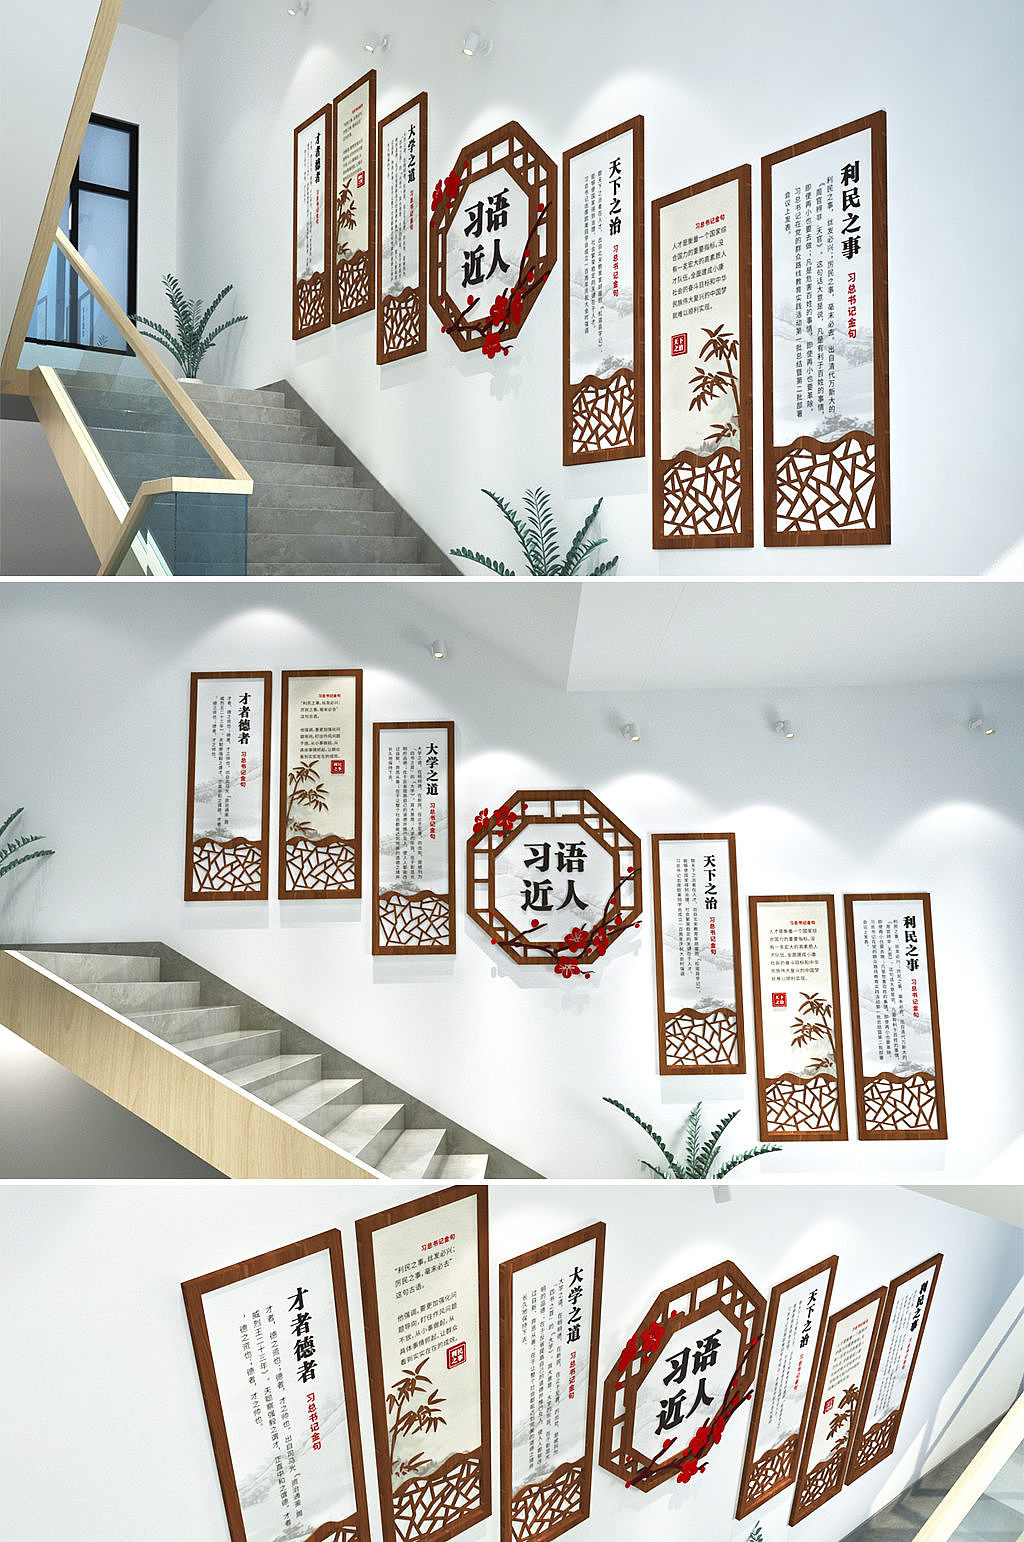 51个前卫创意的楼梯设计方案 - 设计之家